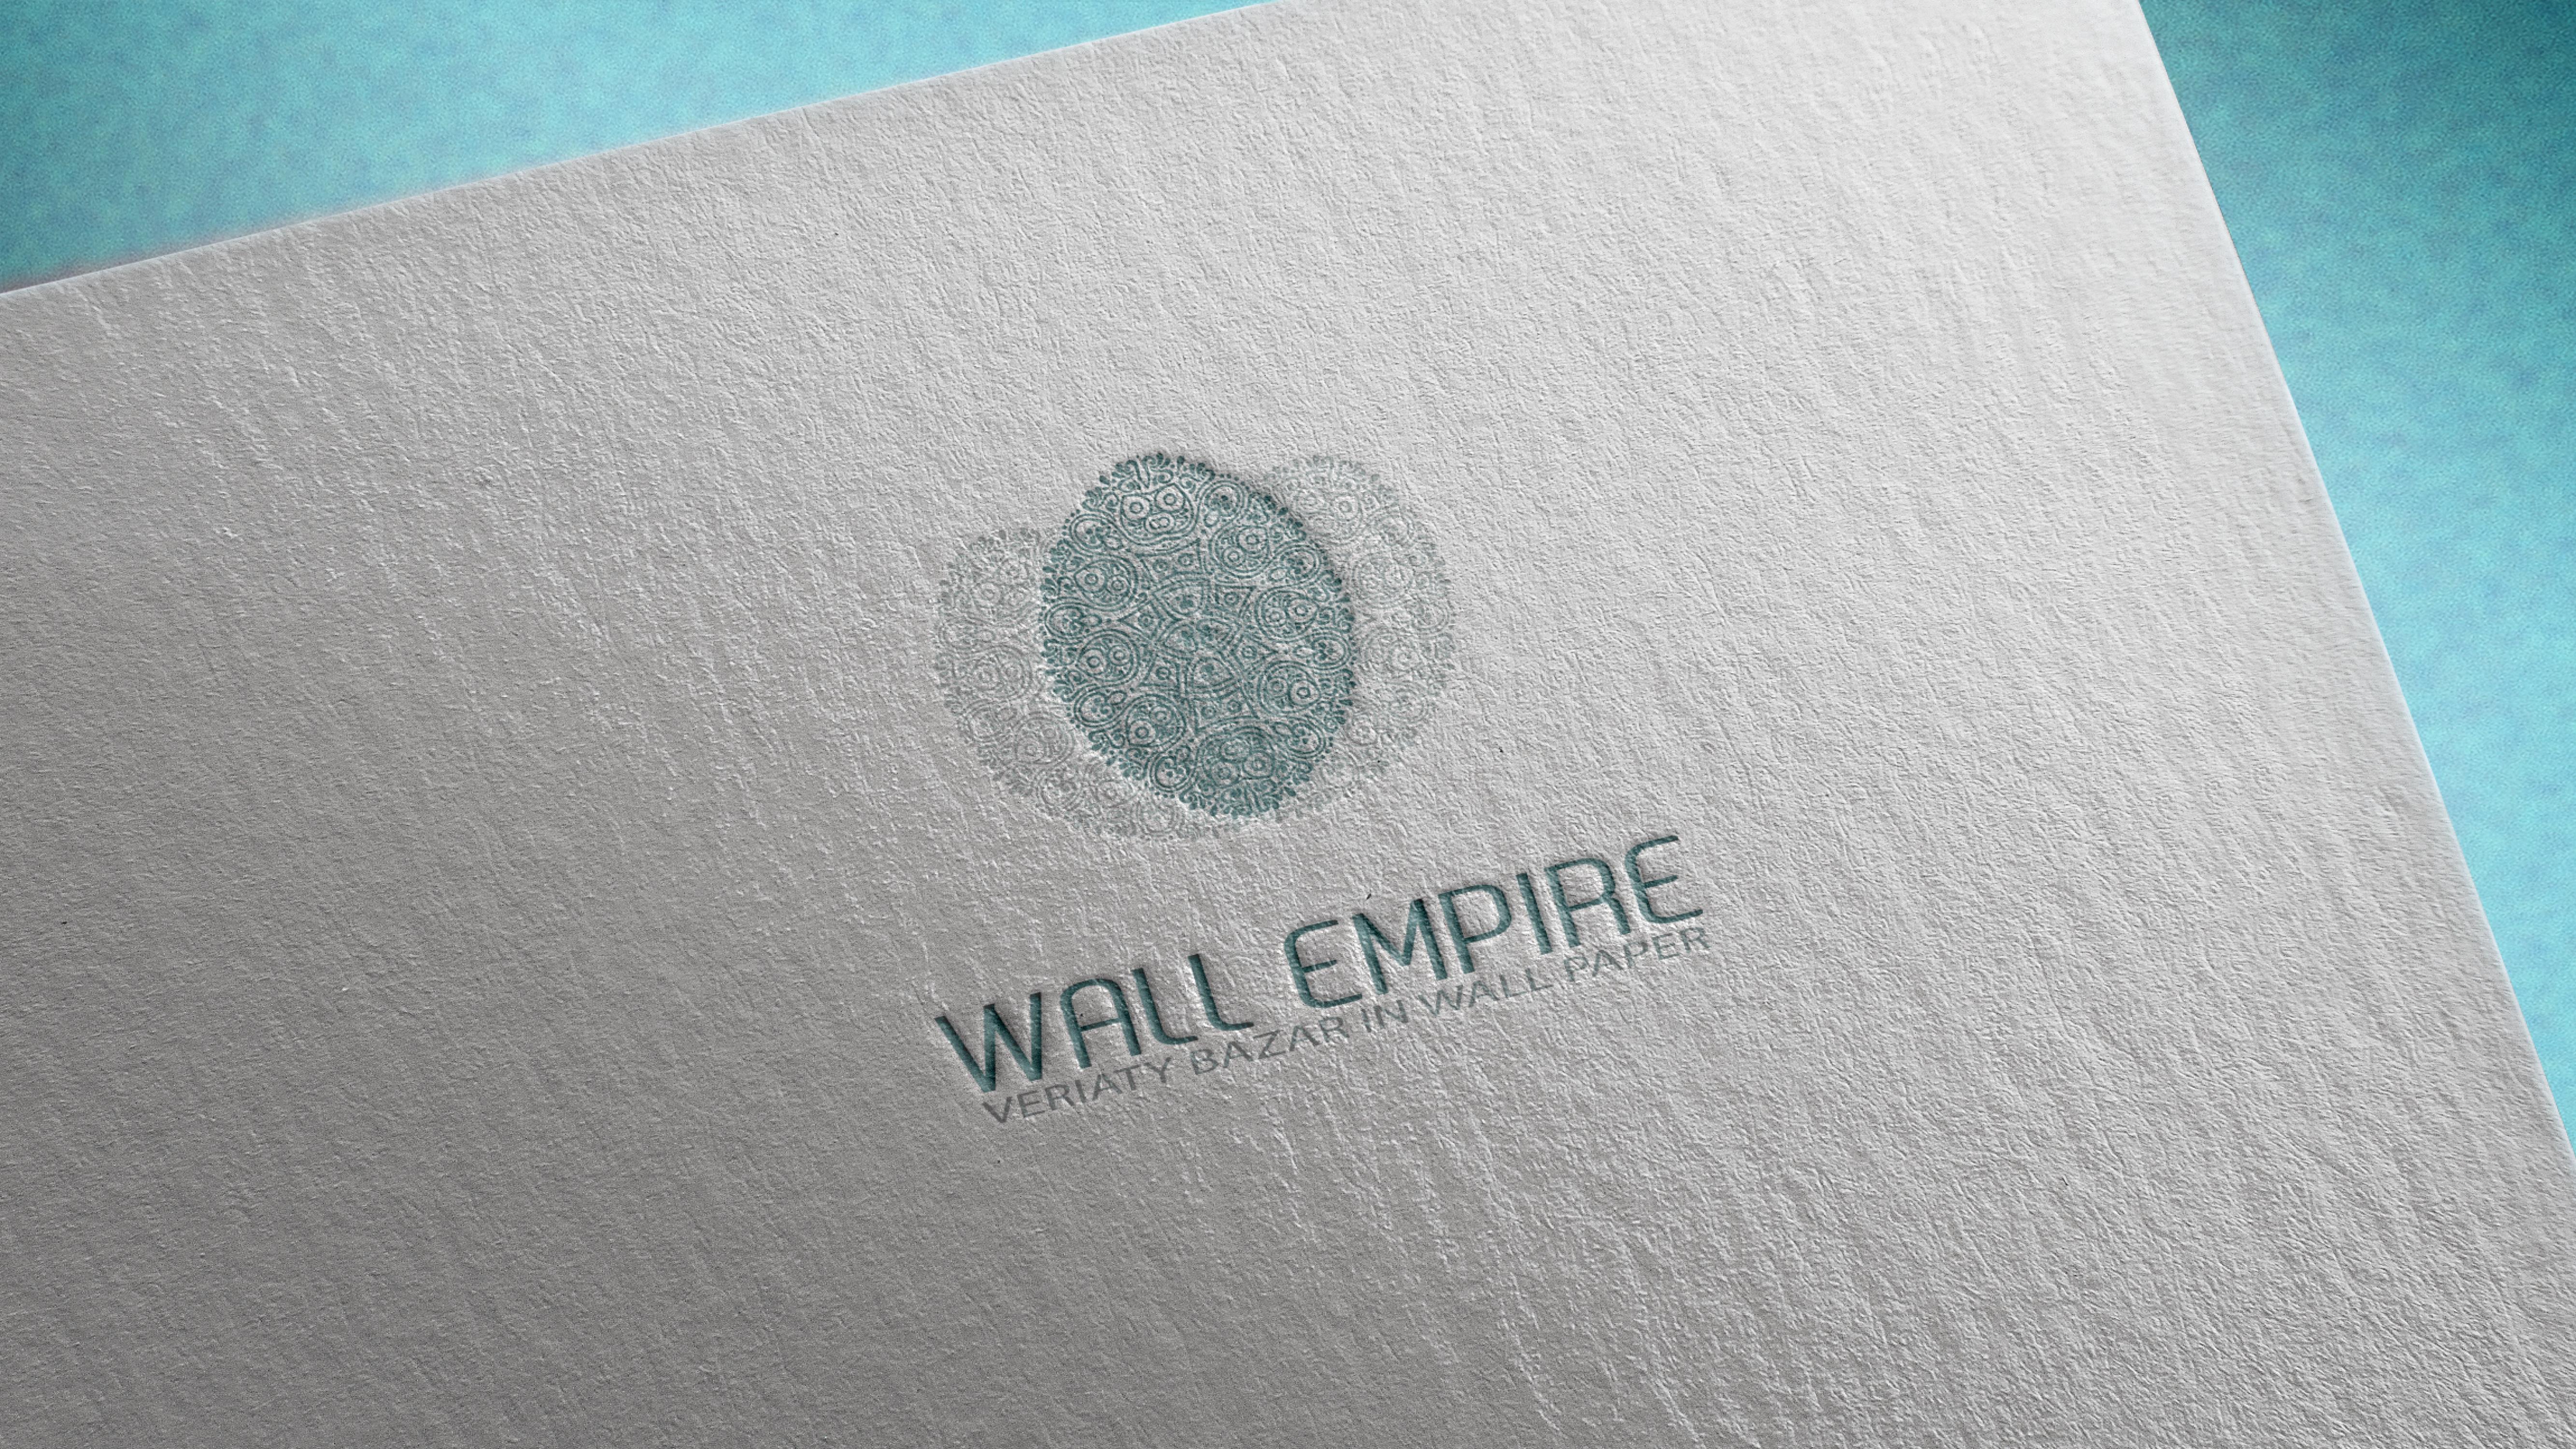 Wall Empire